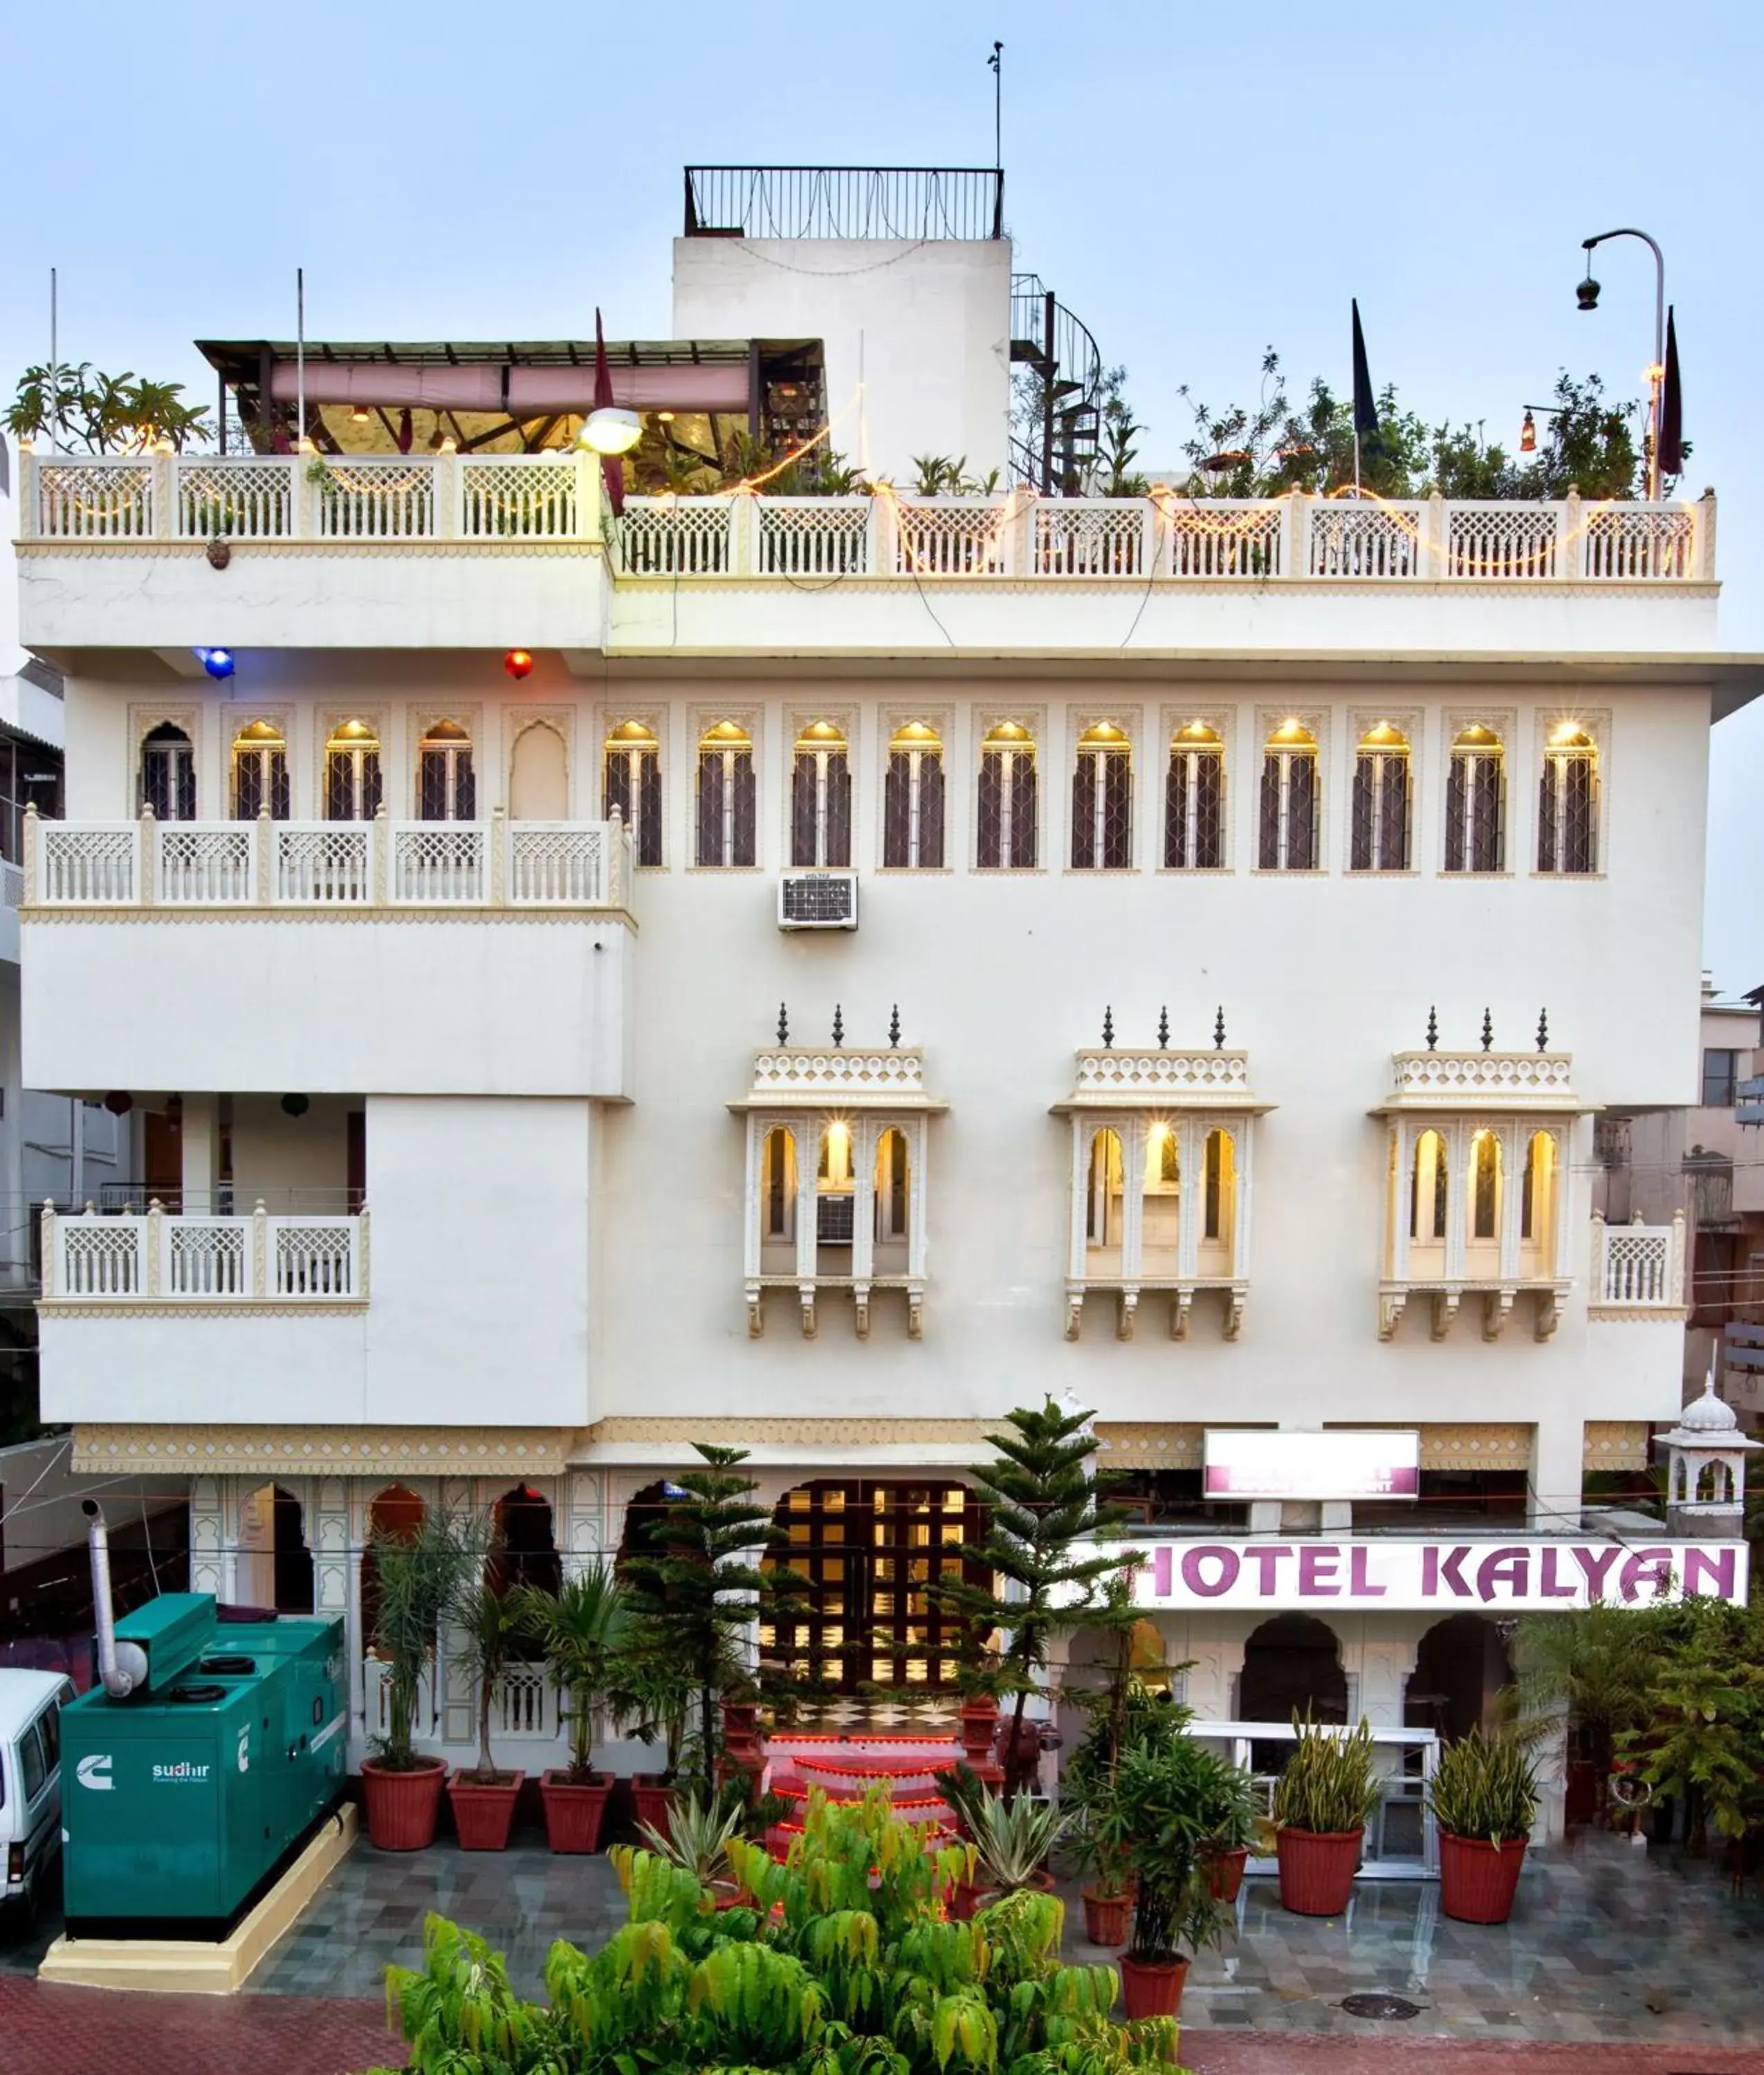 Facade/entrance in Hotel Kalyan